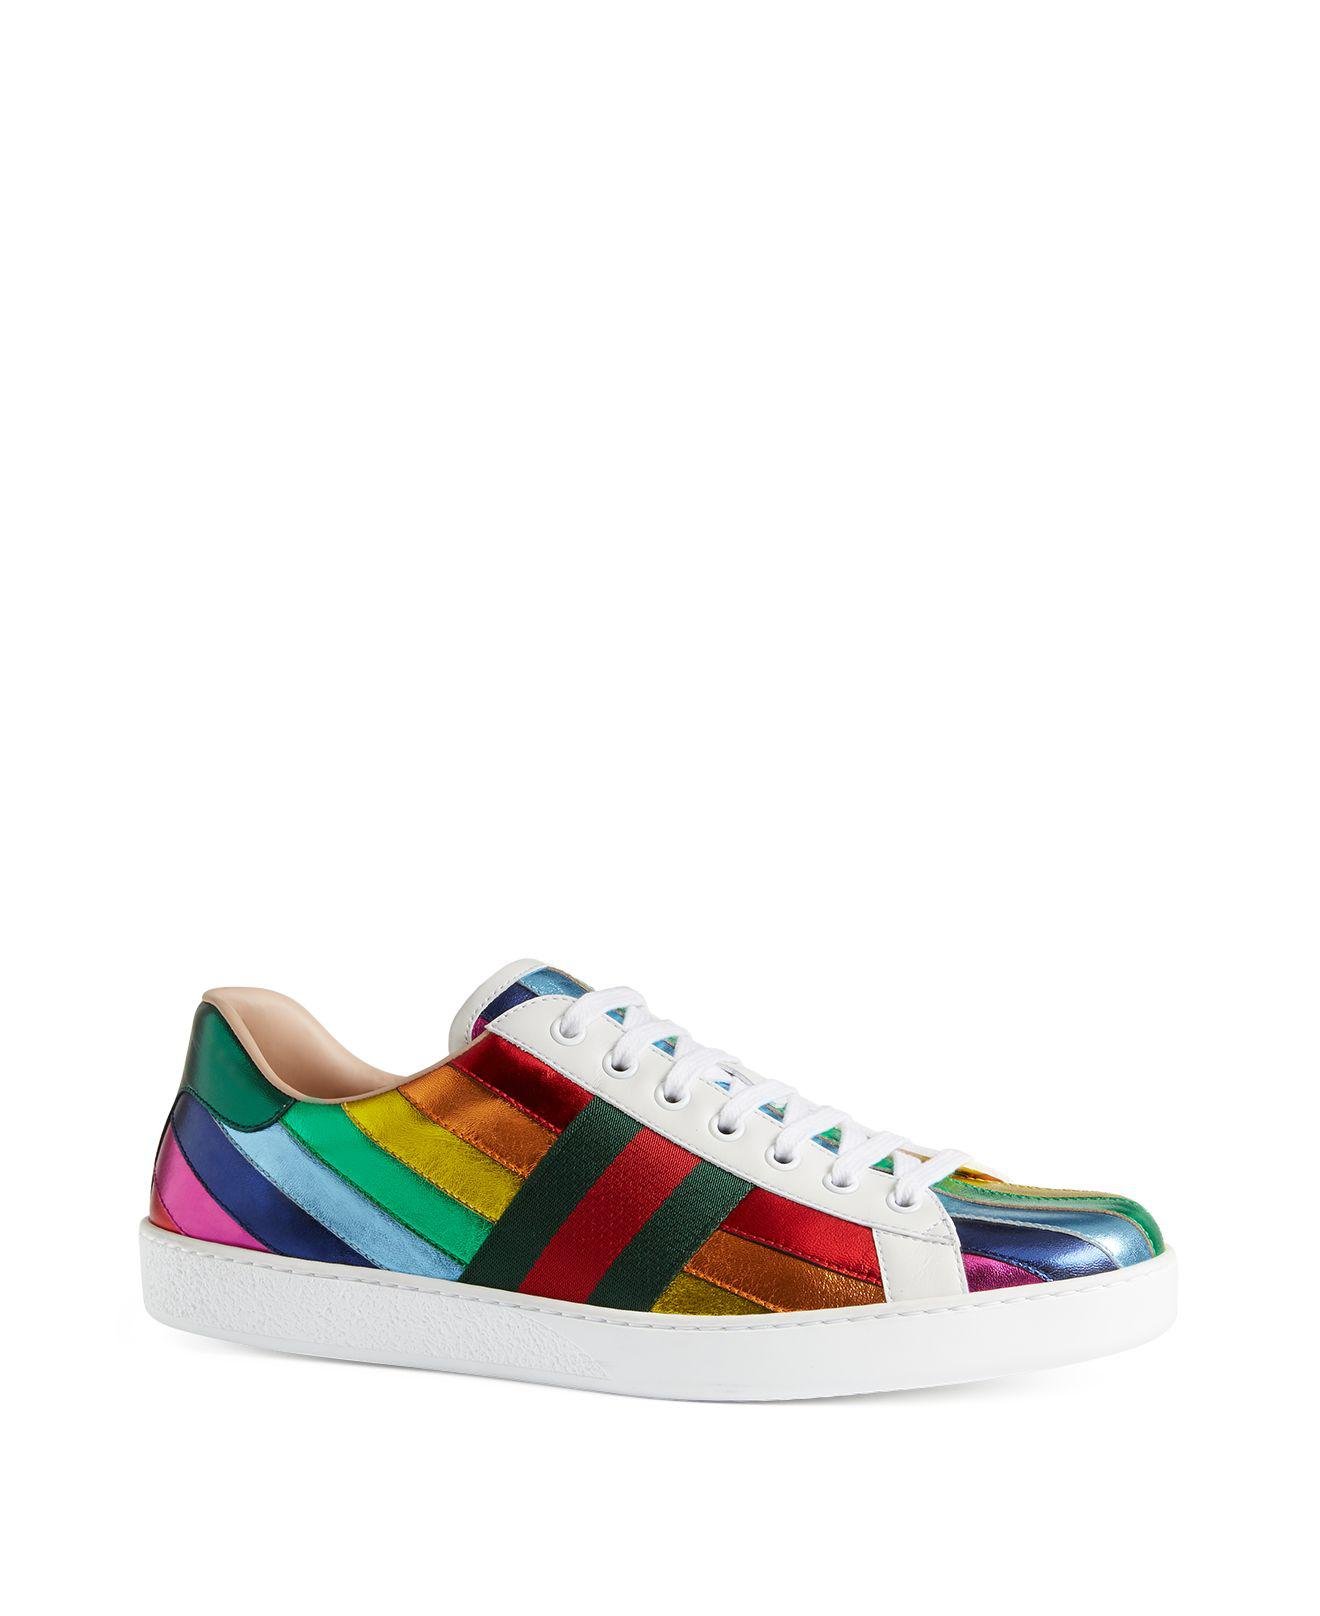 rainbow sneakers mens